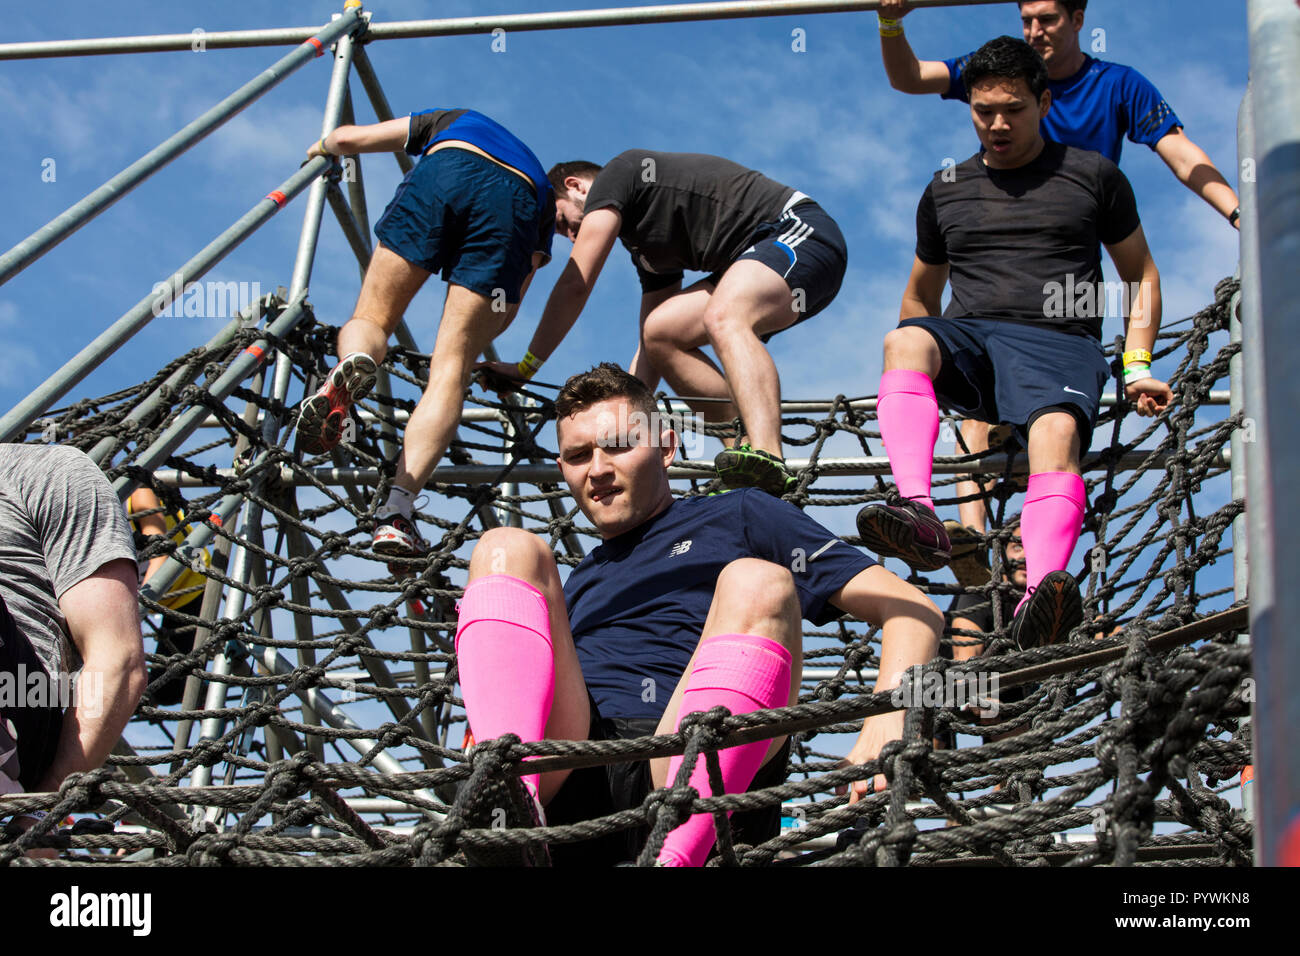 Londres, Reino Unido - 13 de setiembre de 2018: Los participantes toman parte en una dura carrera de obstáculos 5K Mudder en Londres. Foto de stock